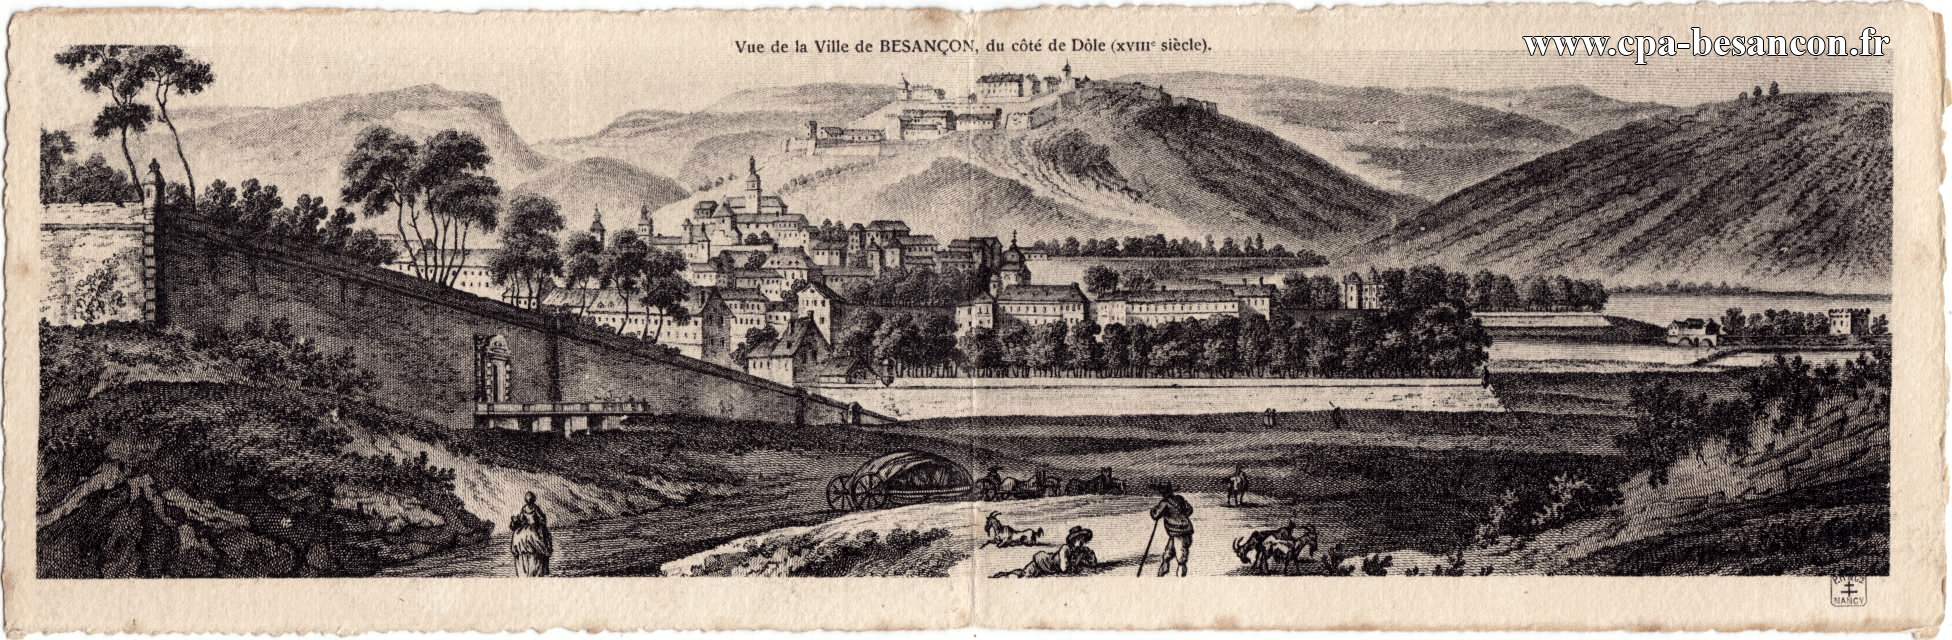 Vue de la Ville de BESANÇON, du côté de Dôle (XVIIIe siècle)